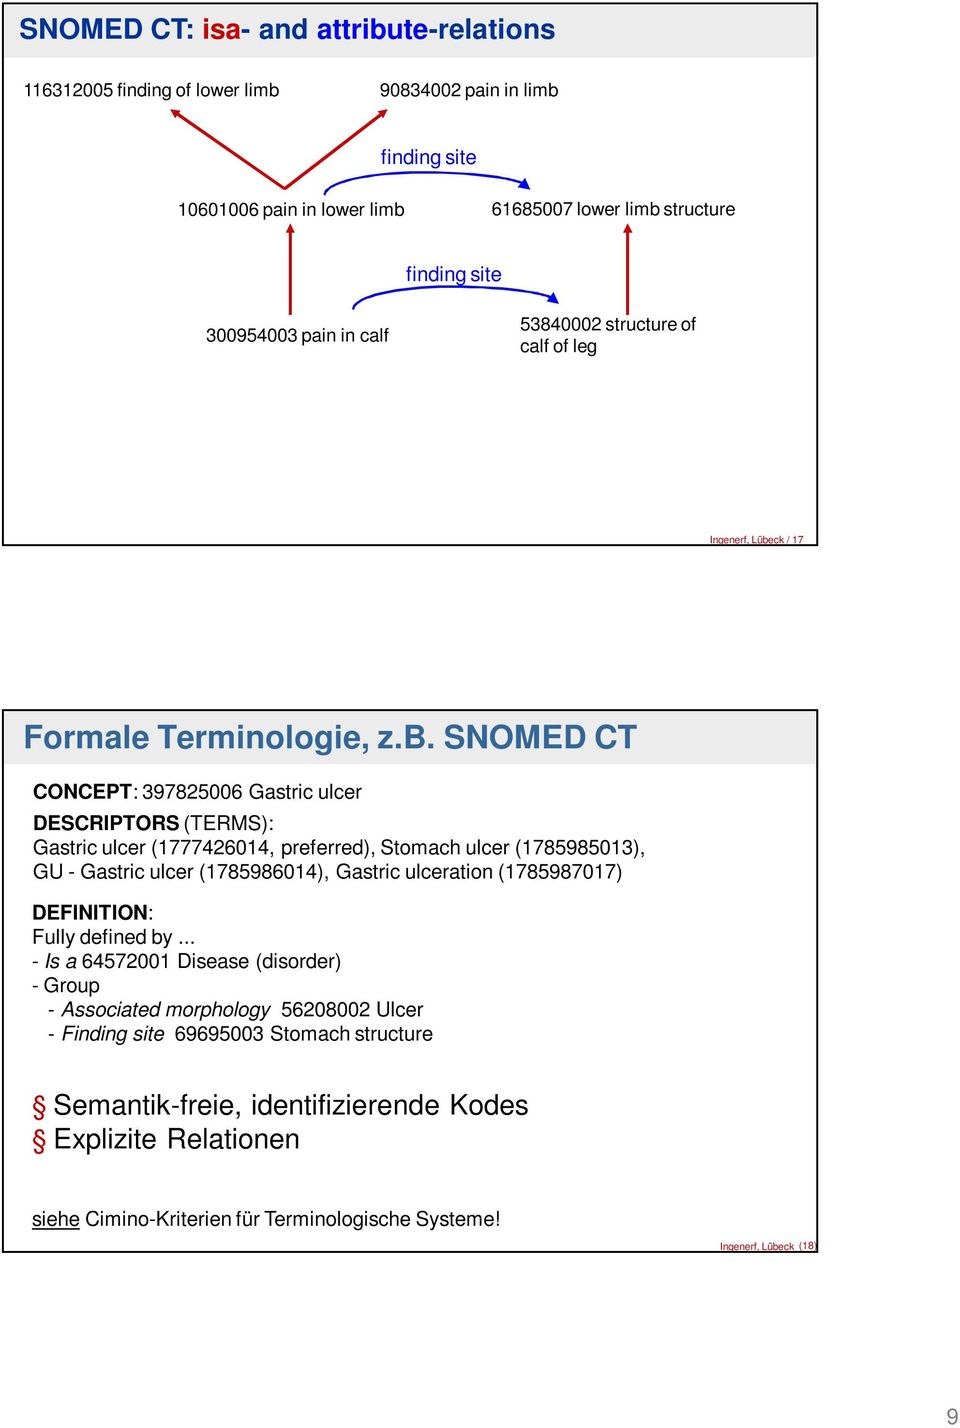 ck / 17 Formale Terminologie, z.b.